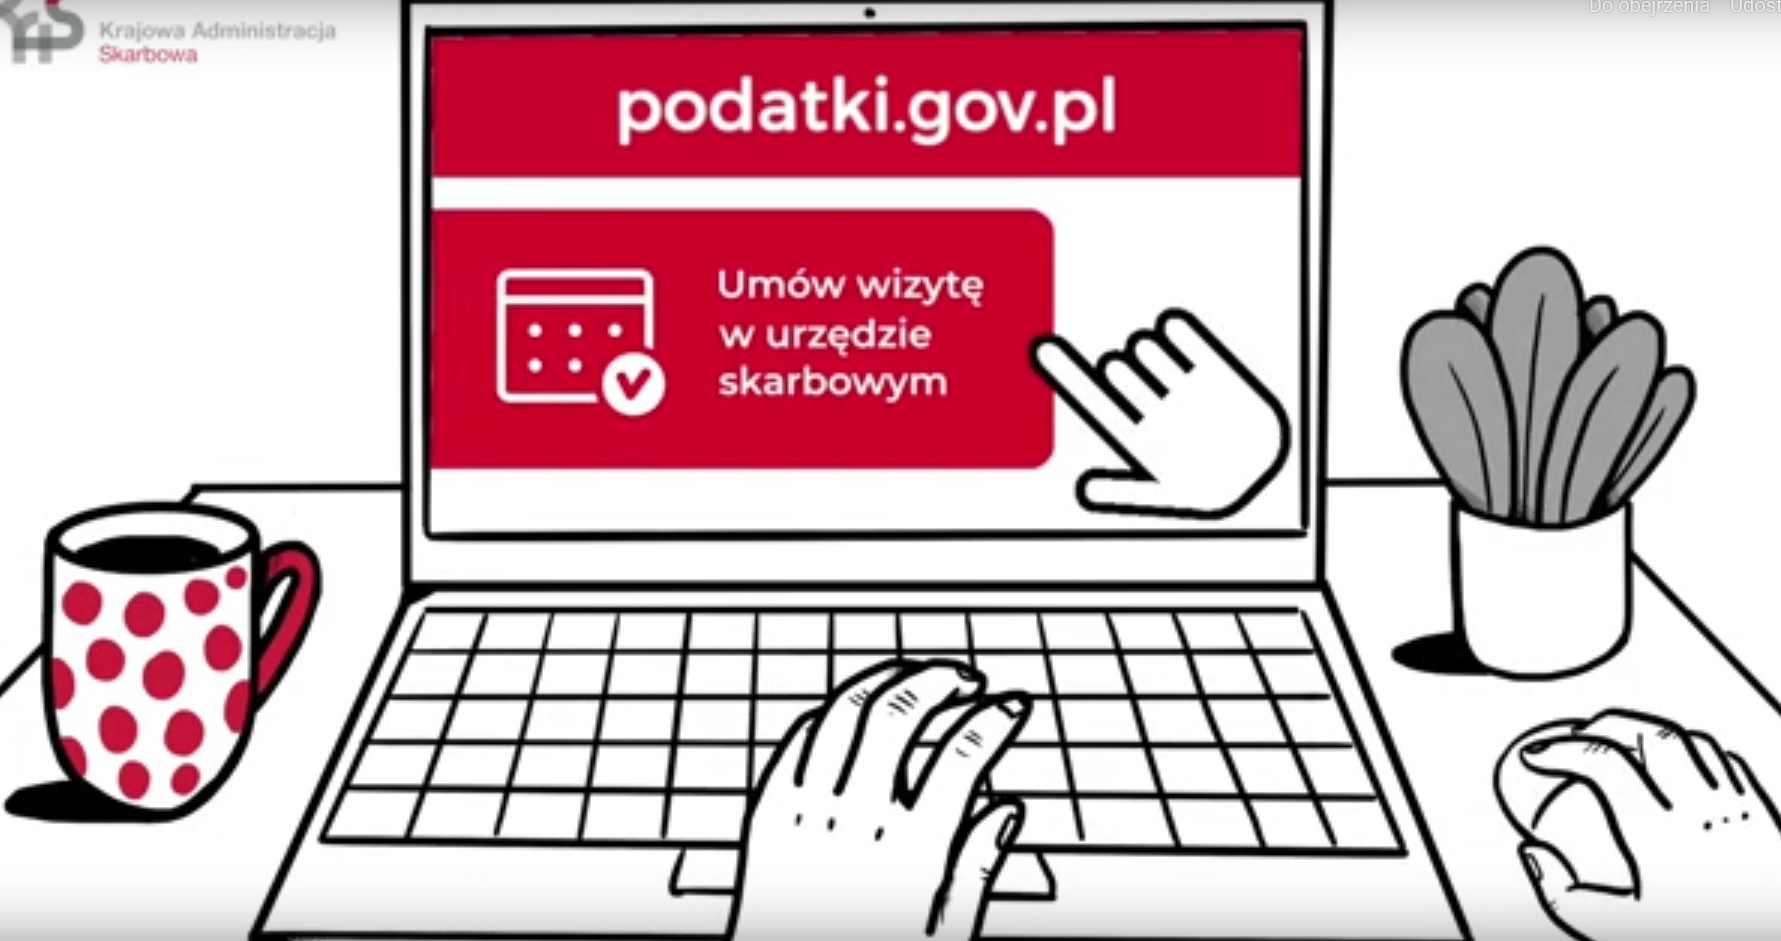 grafika przedstawia laptop na którym otwarta jest strona podatki.gov.pl